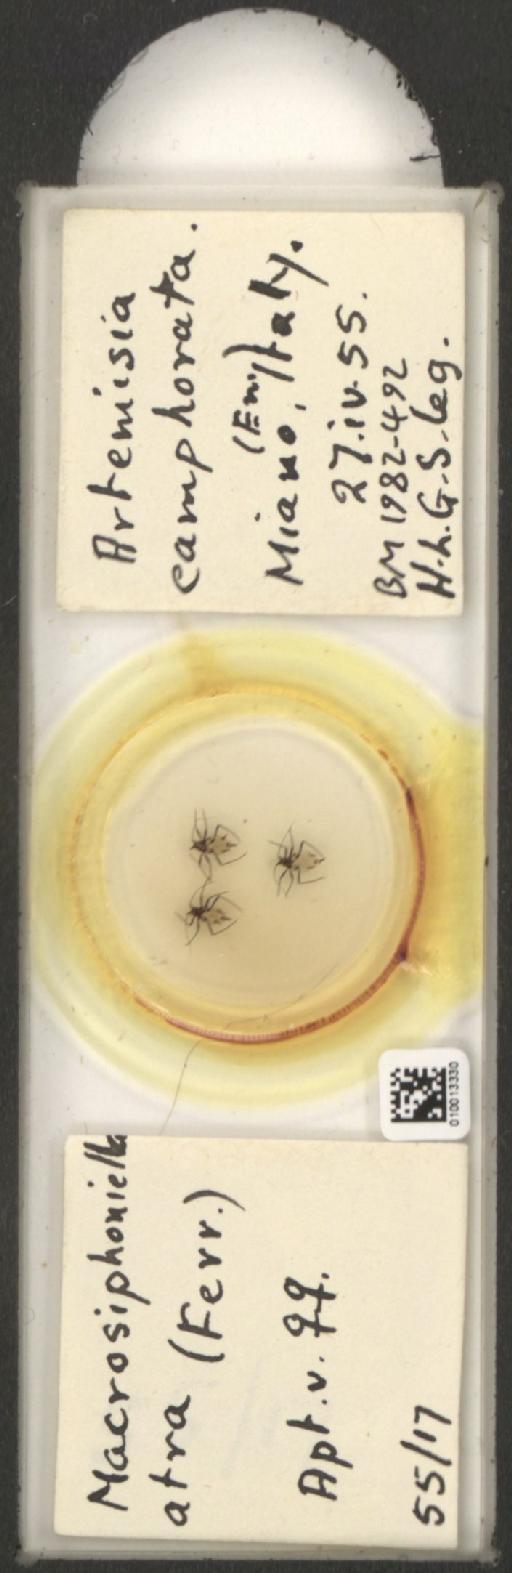 Macrosiphoniella atra Ferrari, 1872 - 010013330_112659_1094717